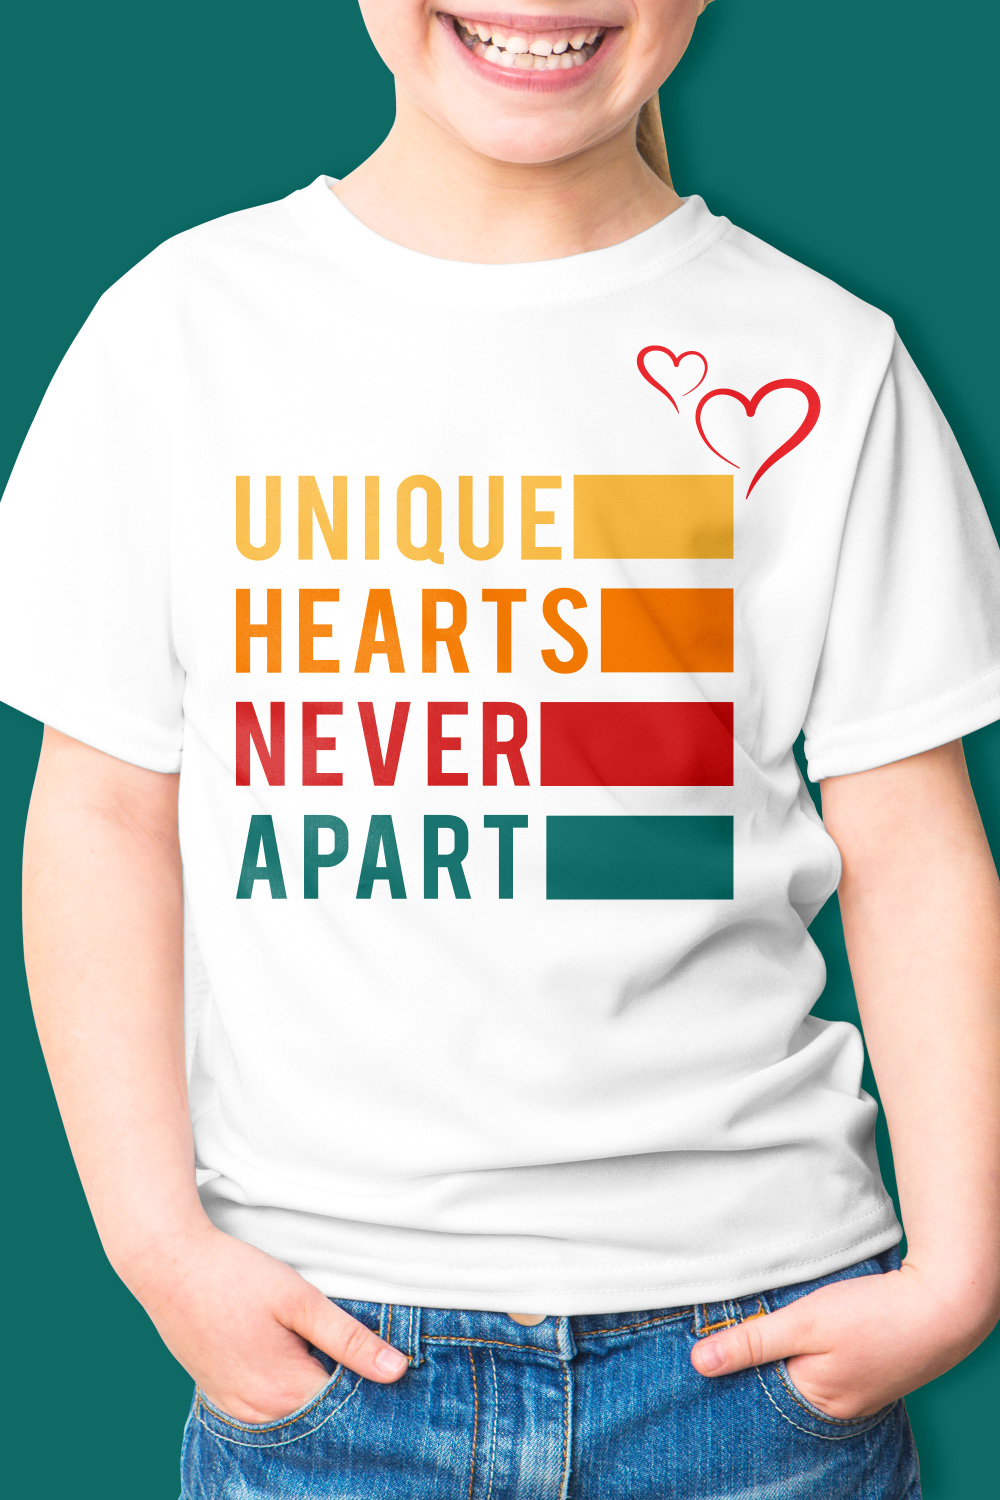 Unique hearts never apart tshirt design pinterest preview image.